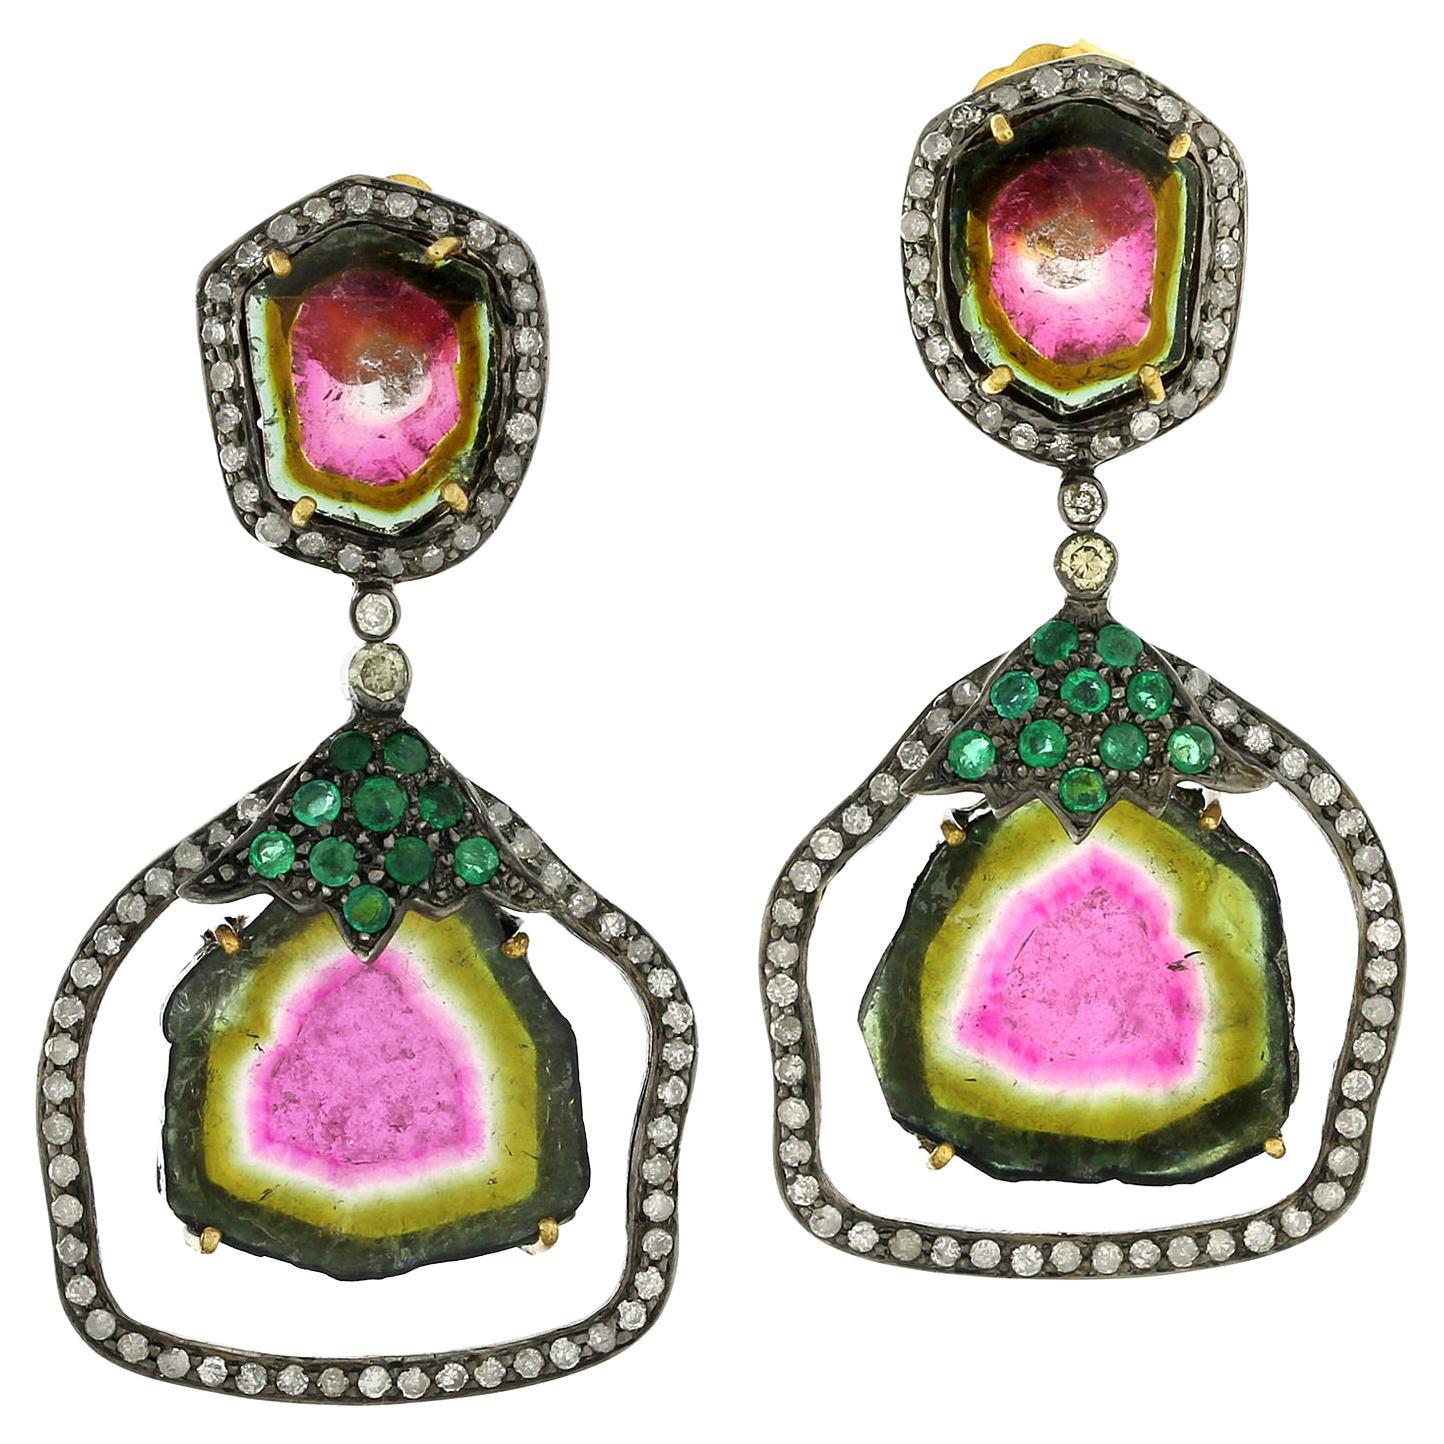 Watermelon-Turmalin-Ohrringe mit Smaragd- und Pavé-Diamanten in 18 Karat Gold und Silber